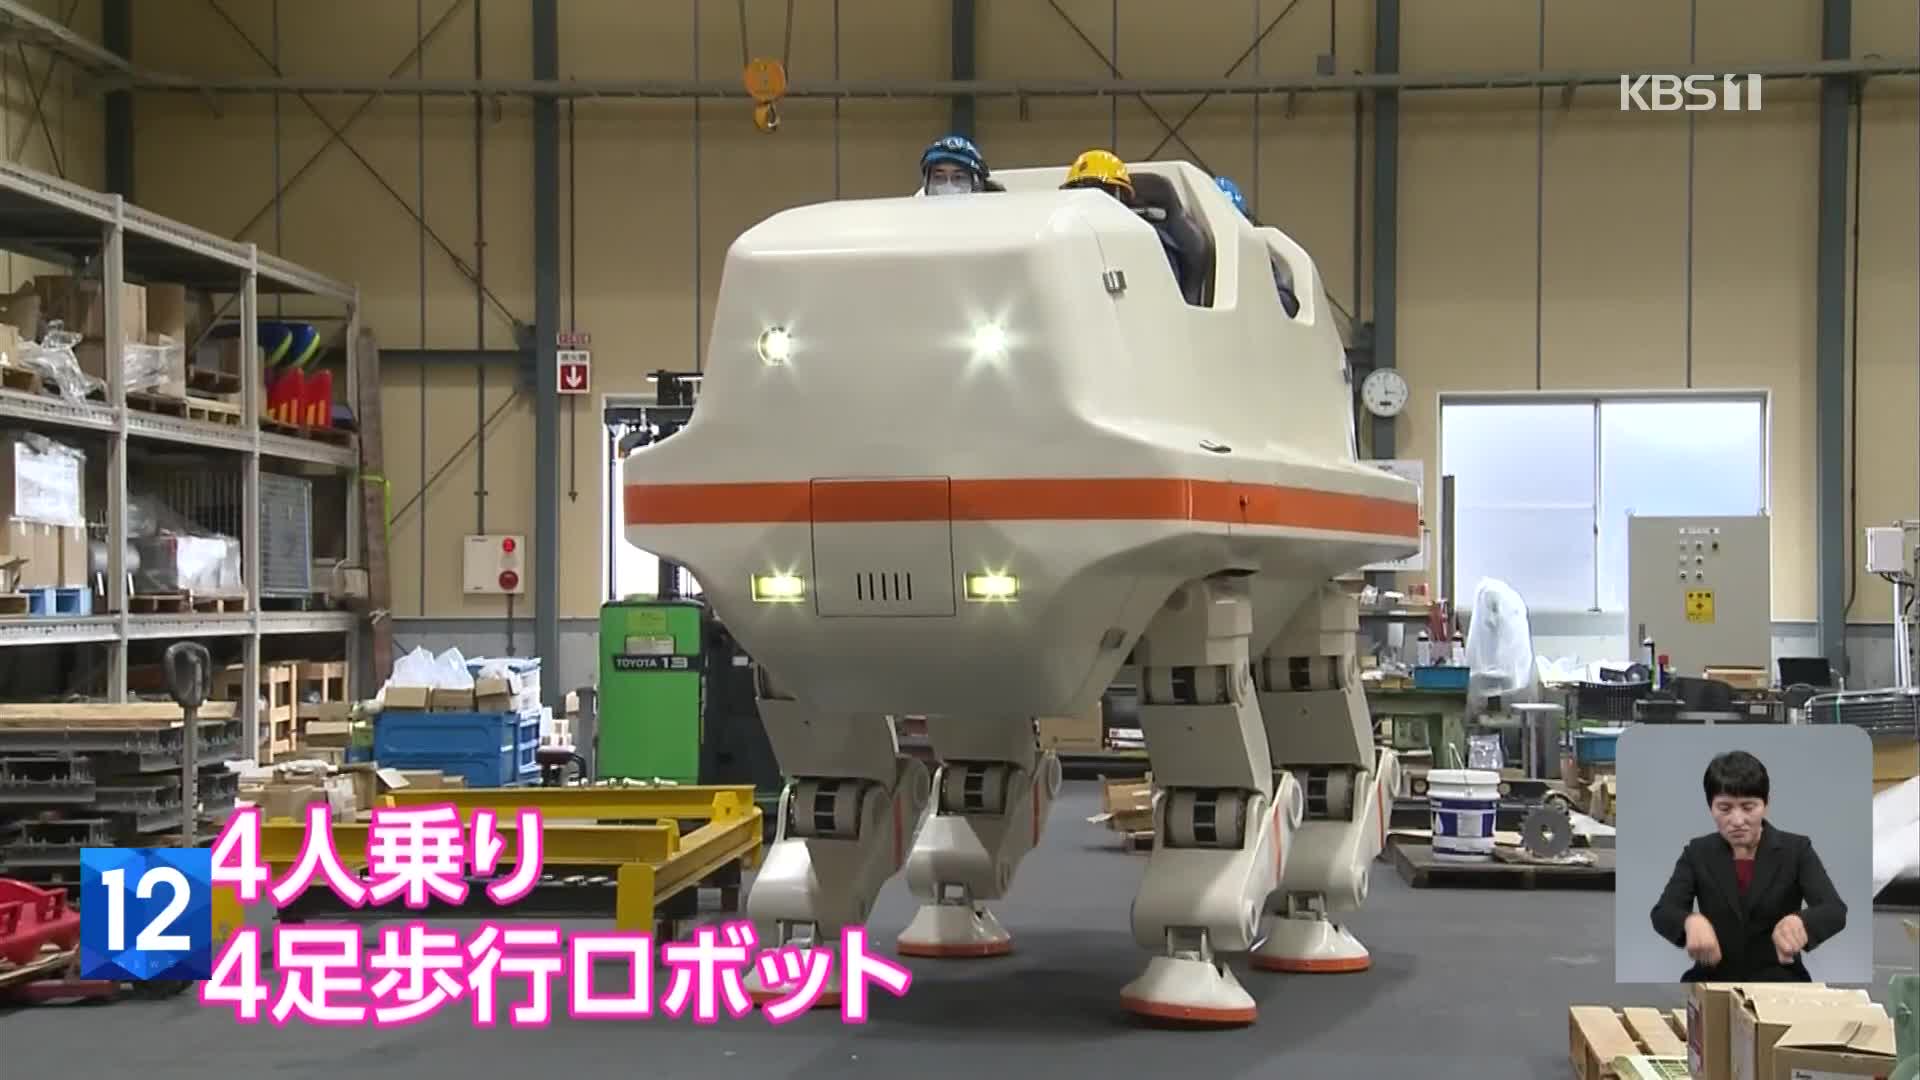 일본, 로봇의 진화…타는 로봇에서 카페 로봇까지